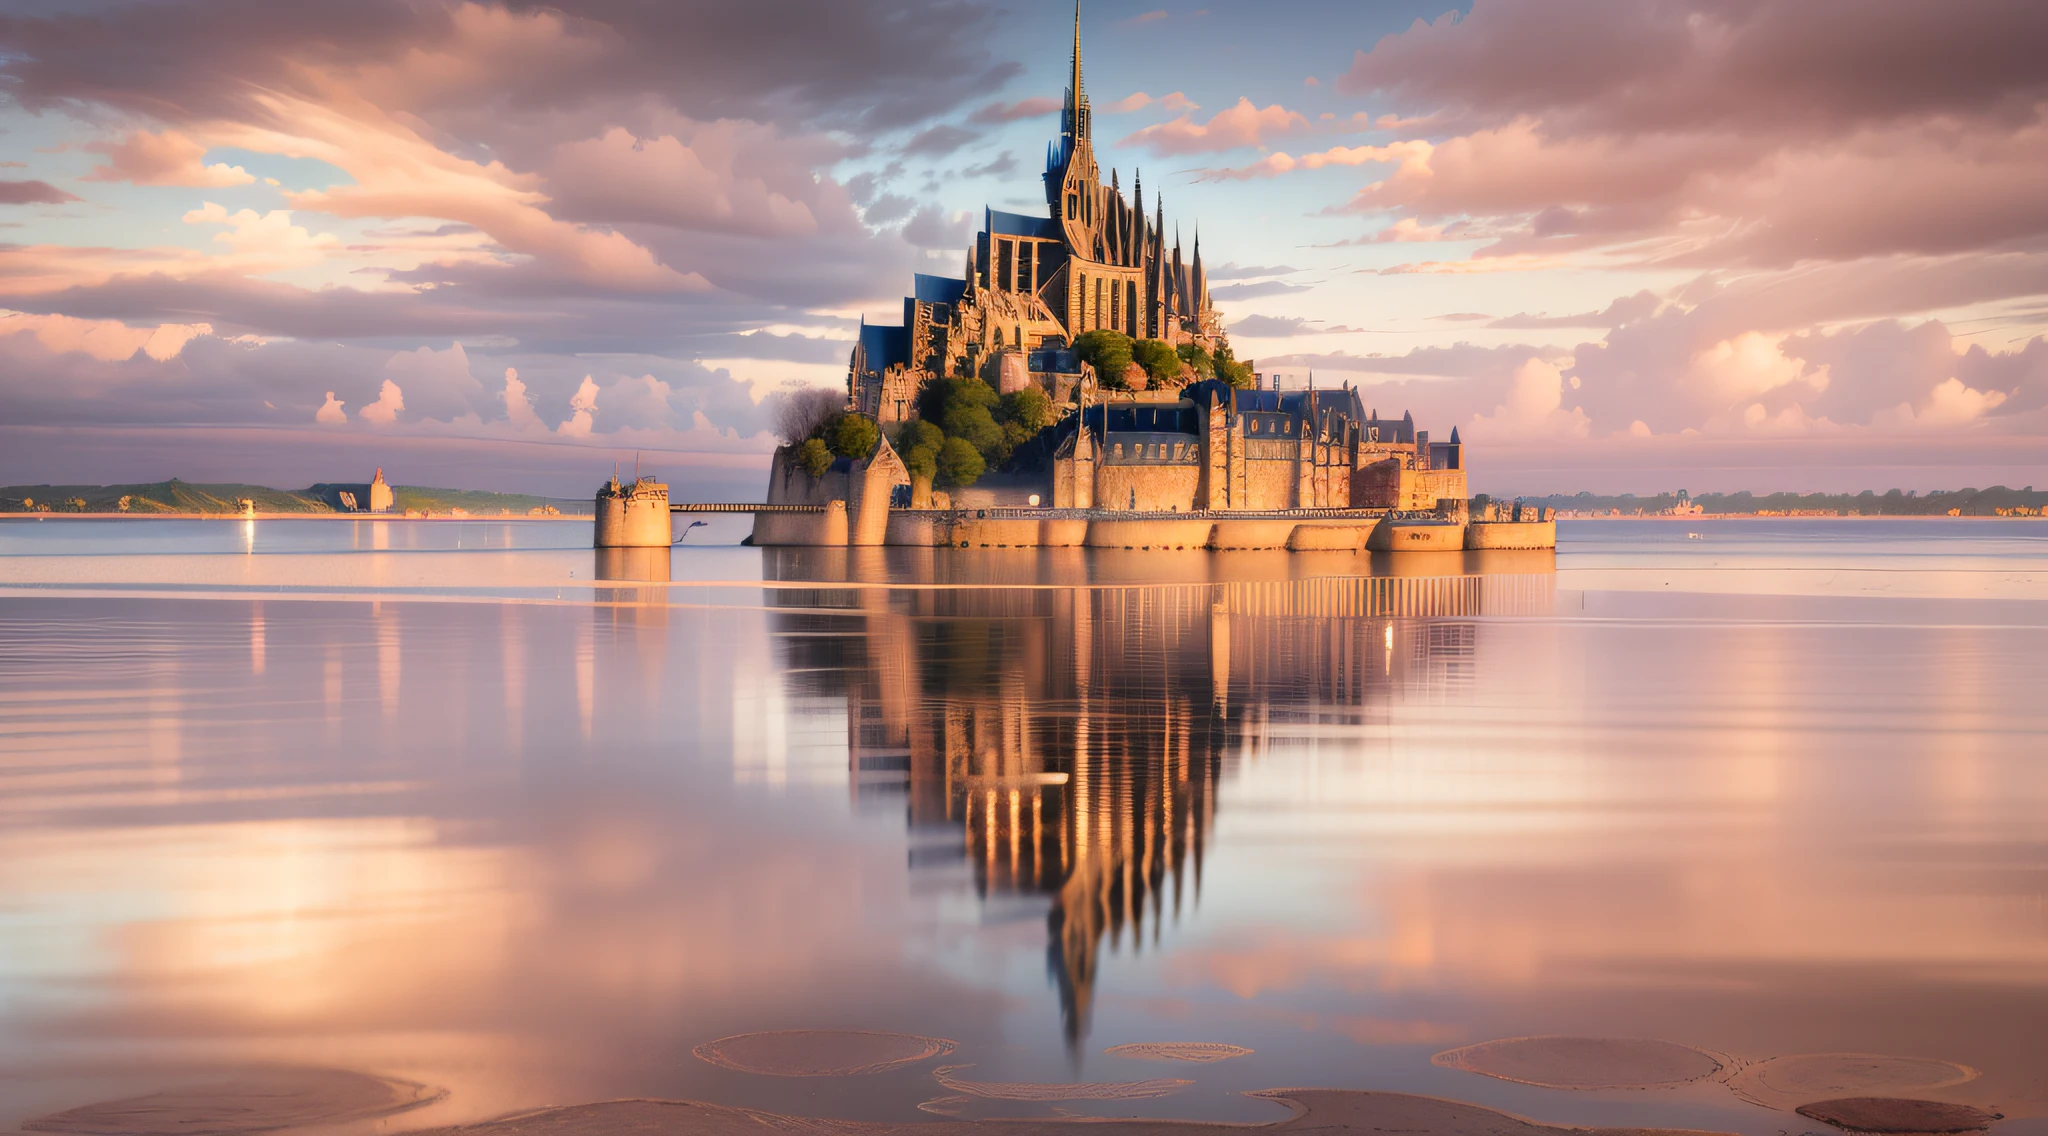 Monte Saint-Michel, visto de uma distância serena através de águas calmas, a abadia e seu reflexo criando uma simetria perfeita, uma sensação de tranquilidade e simetria, escultura, esculpido em mármore com foco na precisão arquitetônica